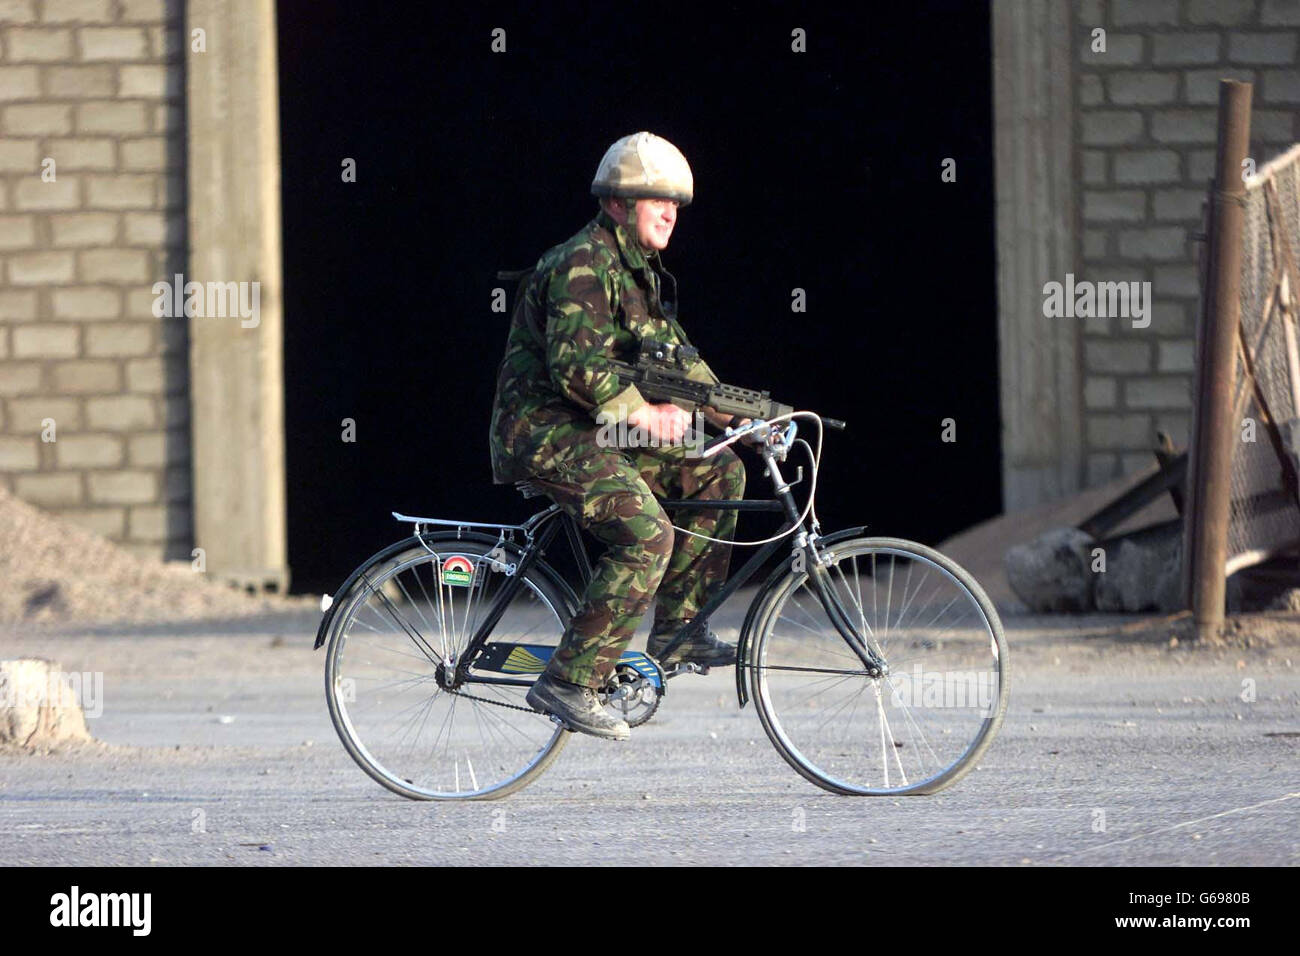 Forze britanniche in Iraq. Un soldato dei Fusiliers, pattuglia la parte meridionale di Basra su una vecchia bicicletta con ruote punzonate. Foto Stock